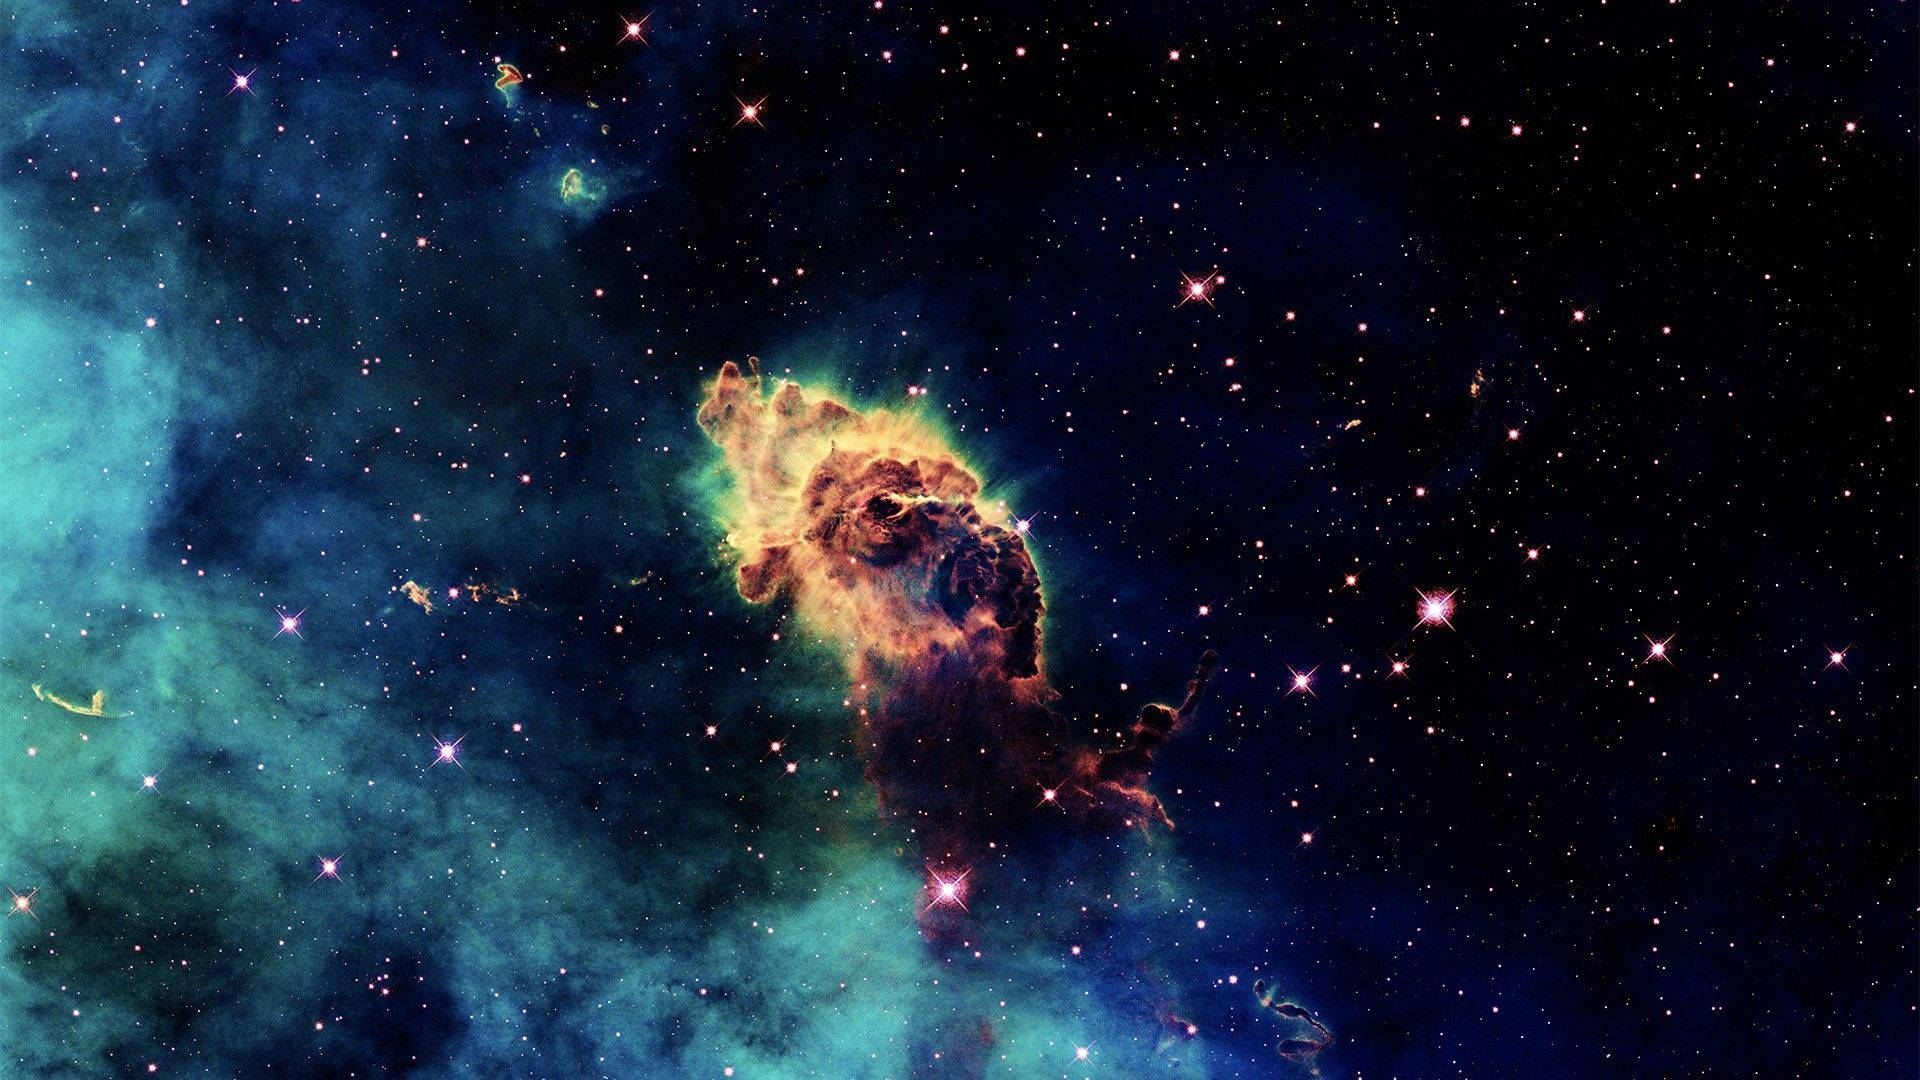 Wallpaper : 2560x1600 px, Carina Nebula, nebula, space, stars 2560x1600 -  wallpaperUp - 657156 - HD Wallpapers - WallHere